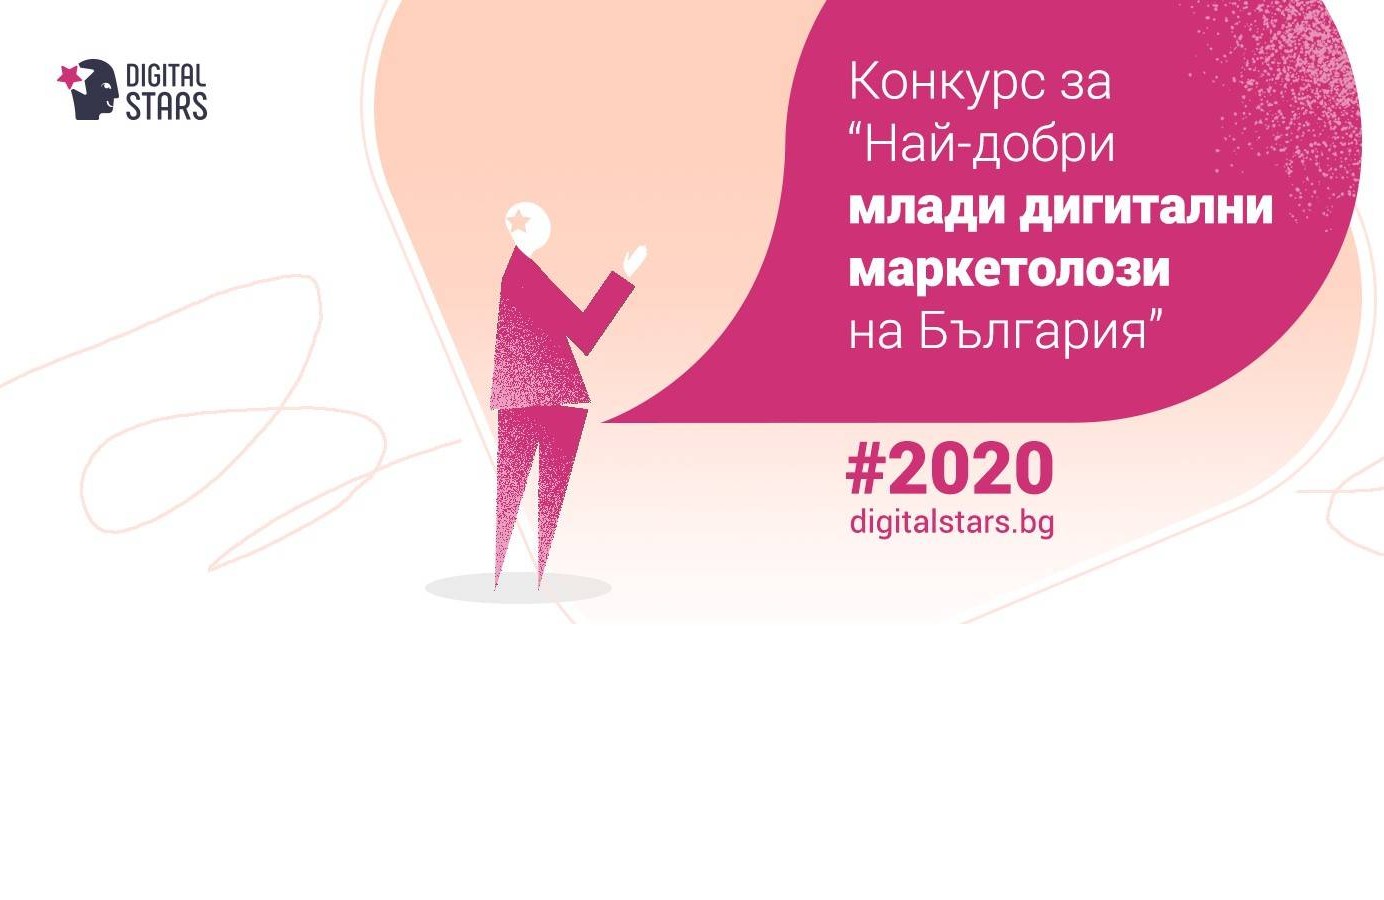 Конкурсът Digital Stars издирва дигиталните звезди на България за 2020. Срок за кандидатстване - 31 август!